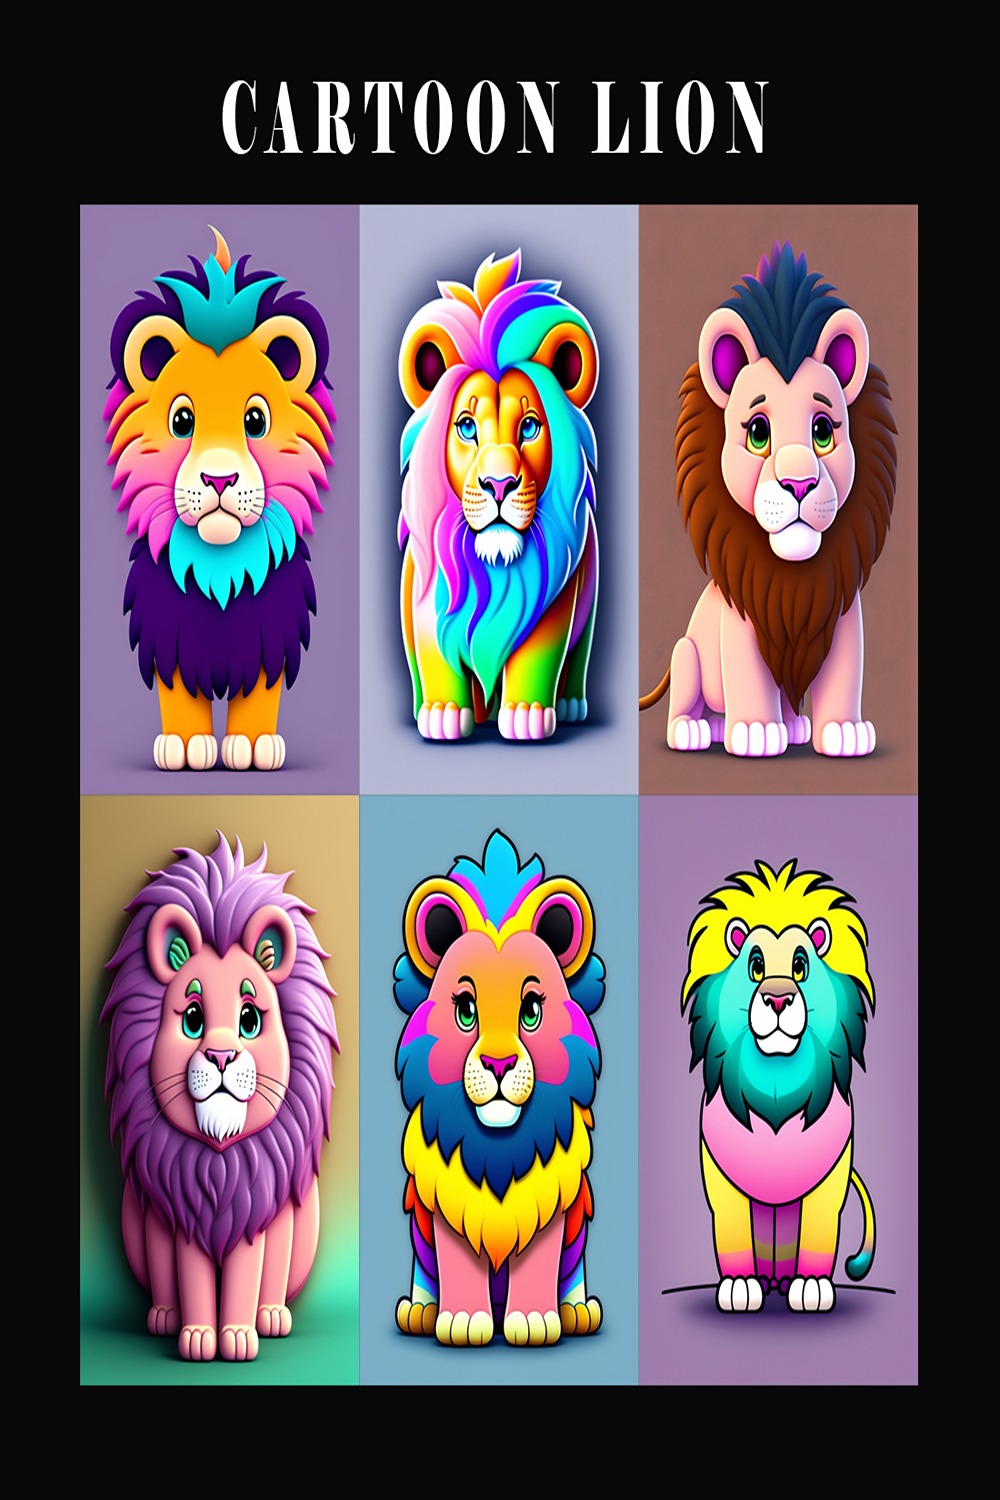 Lion - Cartoon Drawing's color, Lions Images, Lion 2d or 3d Carton, Cartoon Lion Characters pinterest preview image.